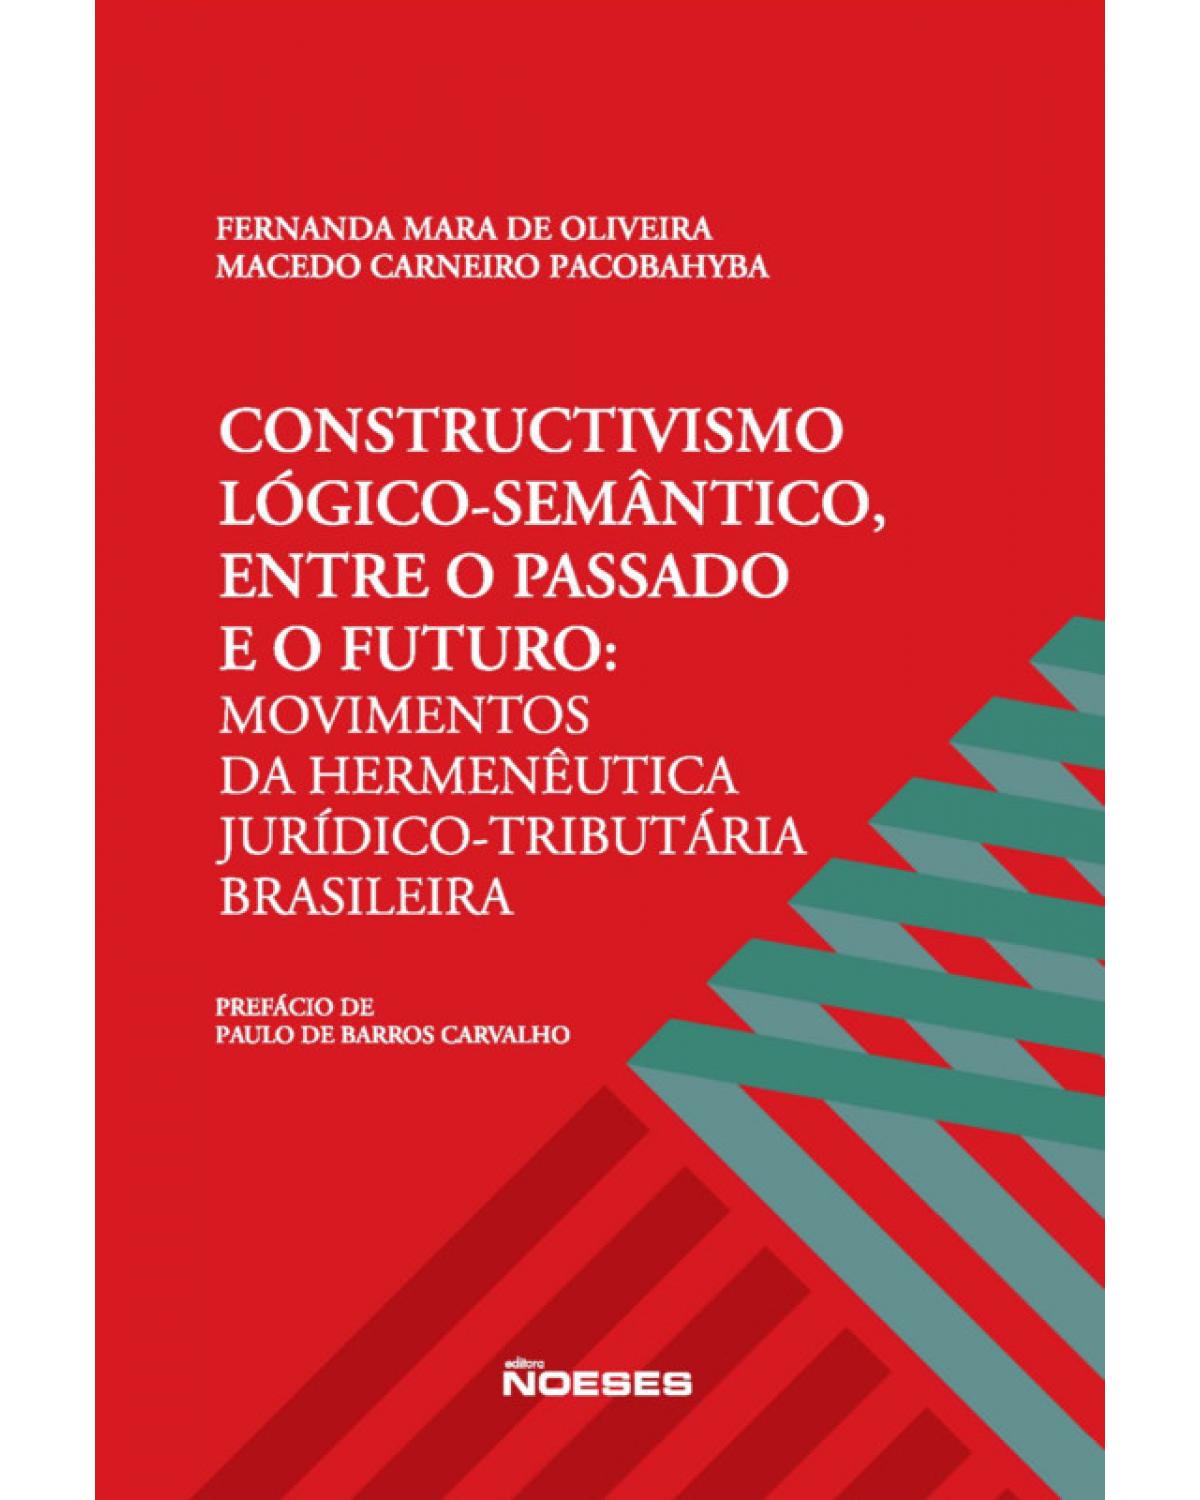 Constructivismo lógico-semântico, entre o passado e o futuro - movimentos da hermenêutica jurídico-tributária brasileira - 1ª Edição | 2019